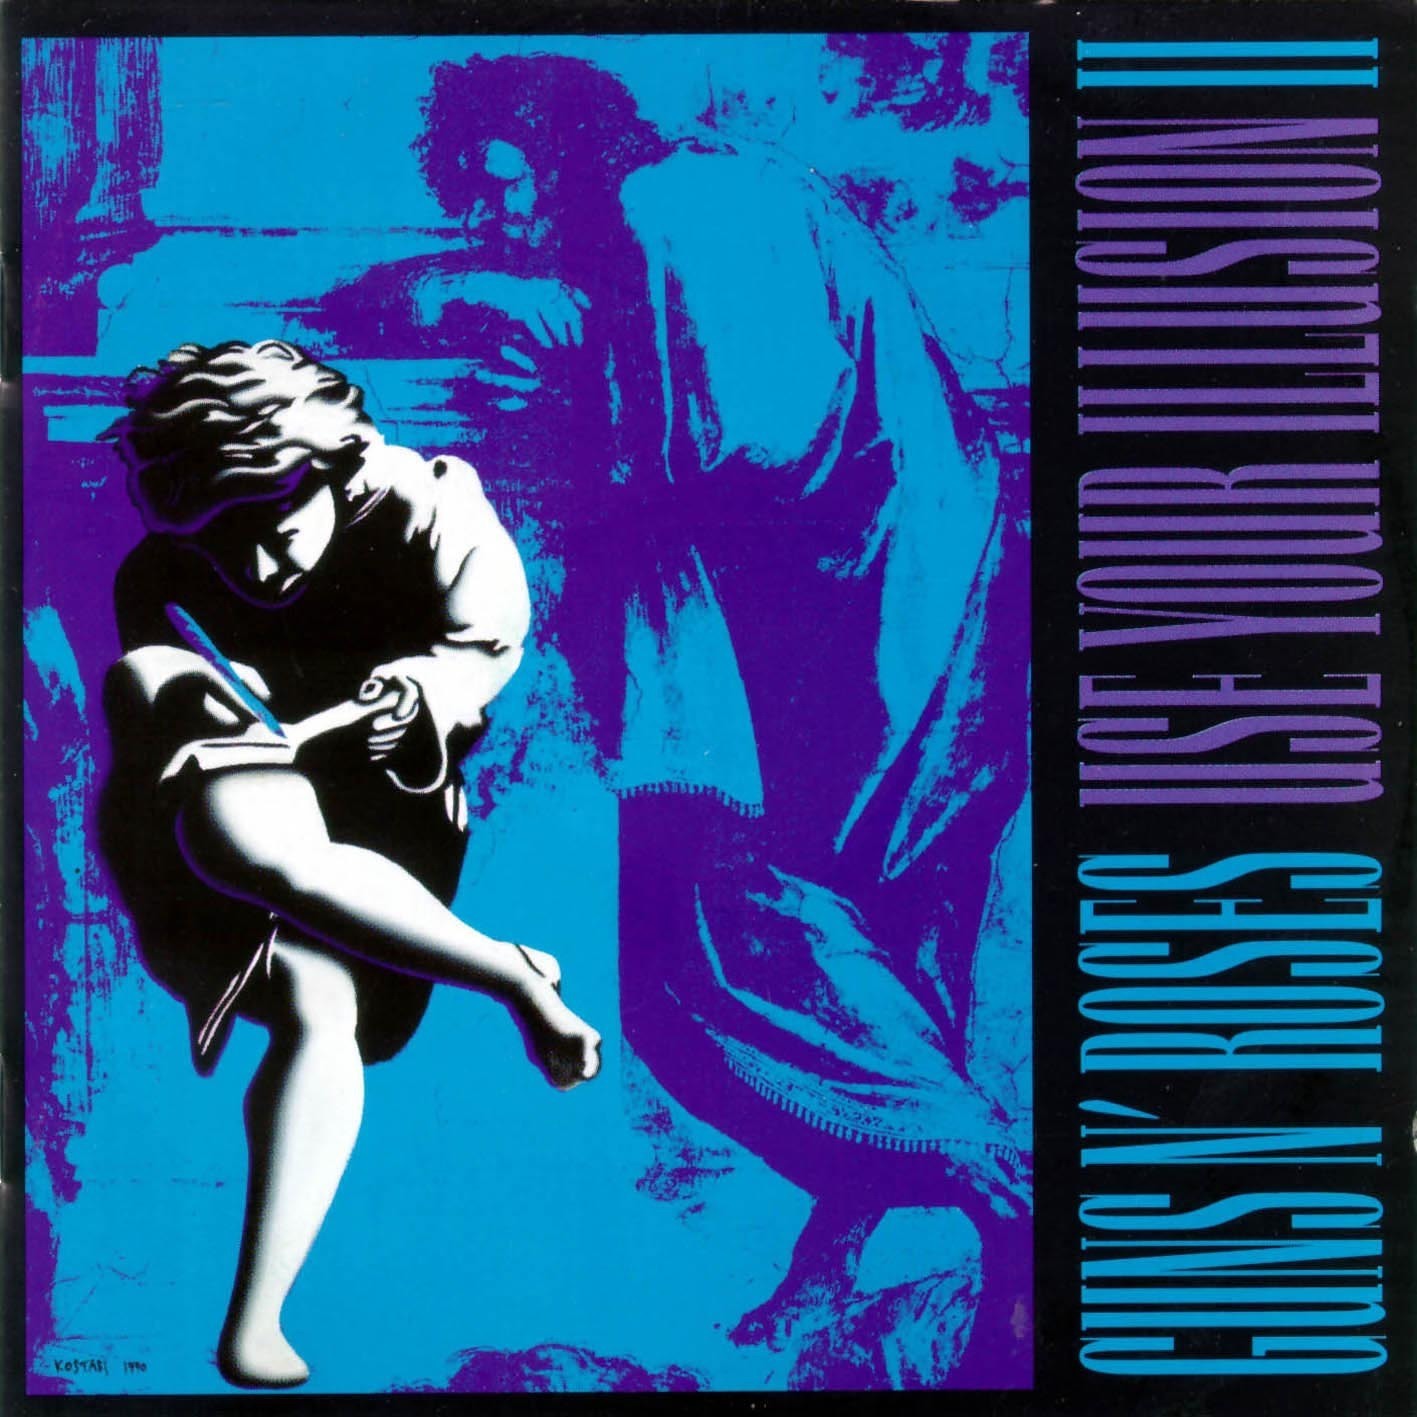 Виниловая пластинка Guns N' Roses, Use Your Illusion Ii (0602445117314) guns n roses use your illusion ii remastered 2022 2lp конверты внутренние coex для грампластинок 12 25шт набор